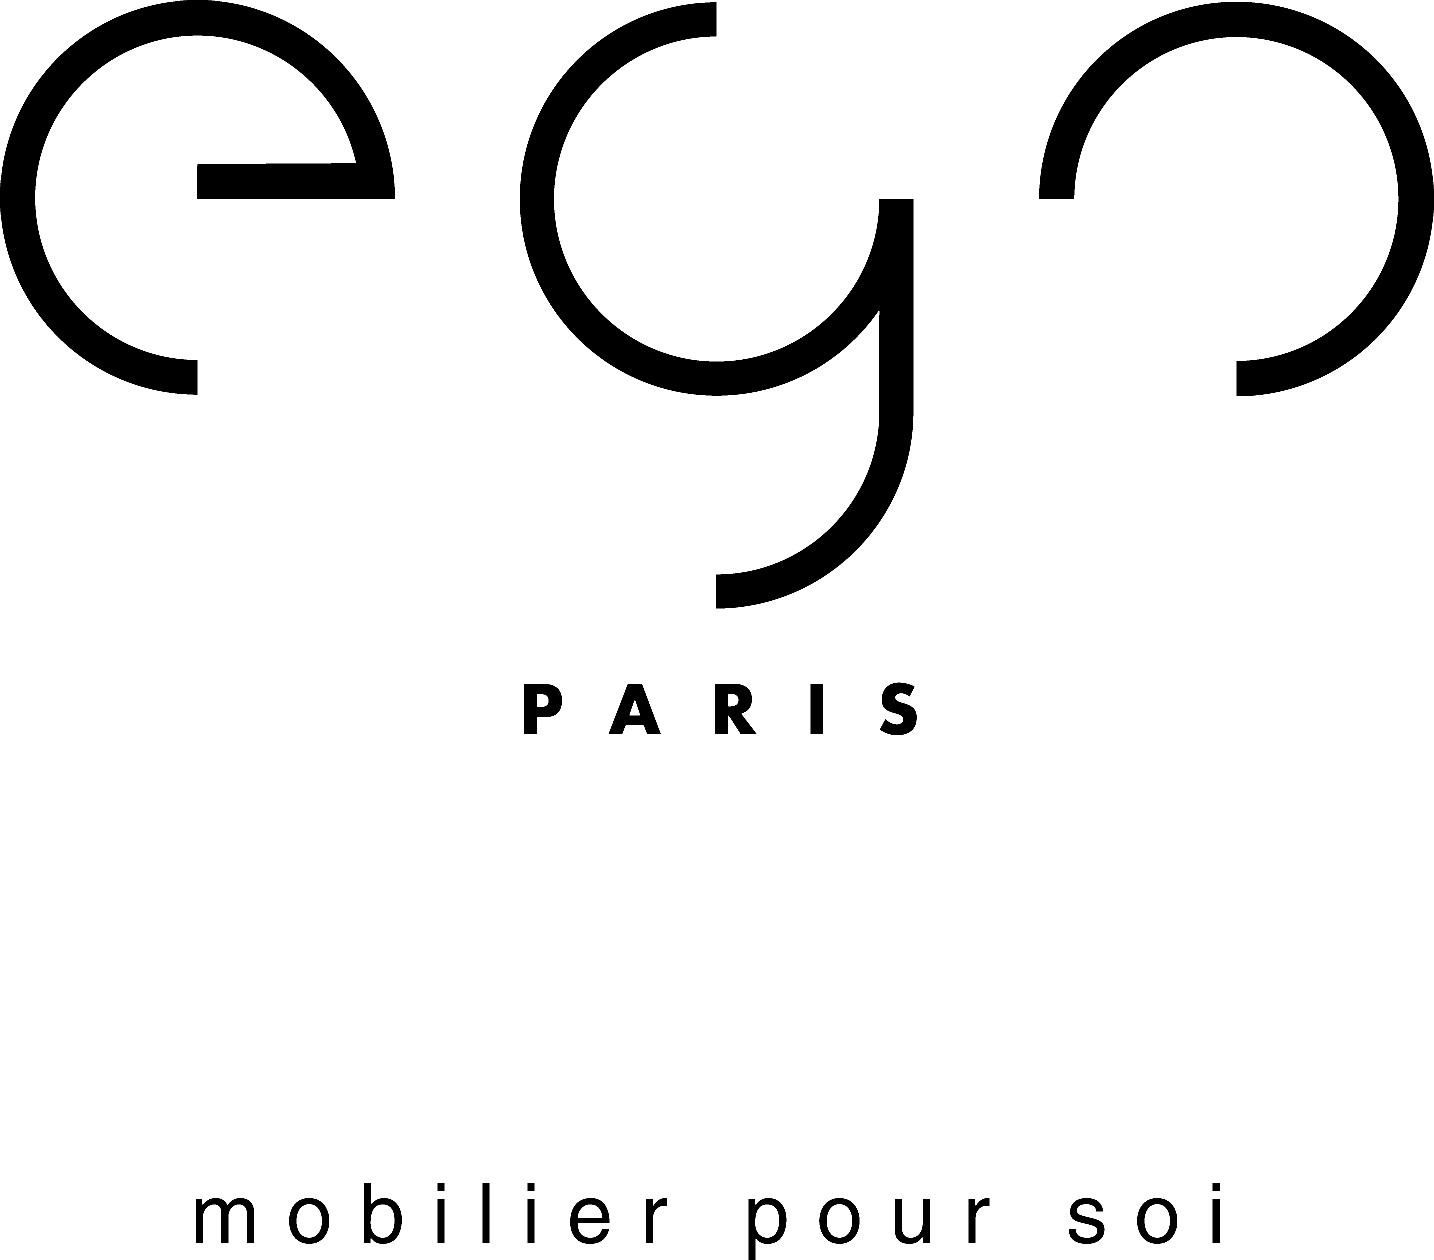 EGO Paris